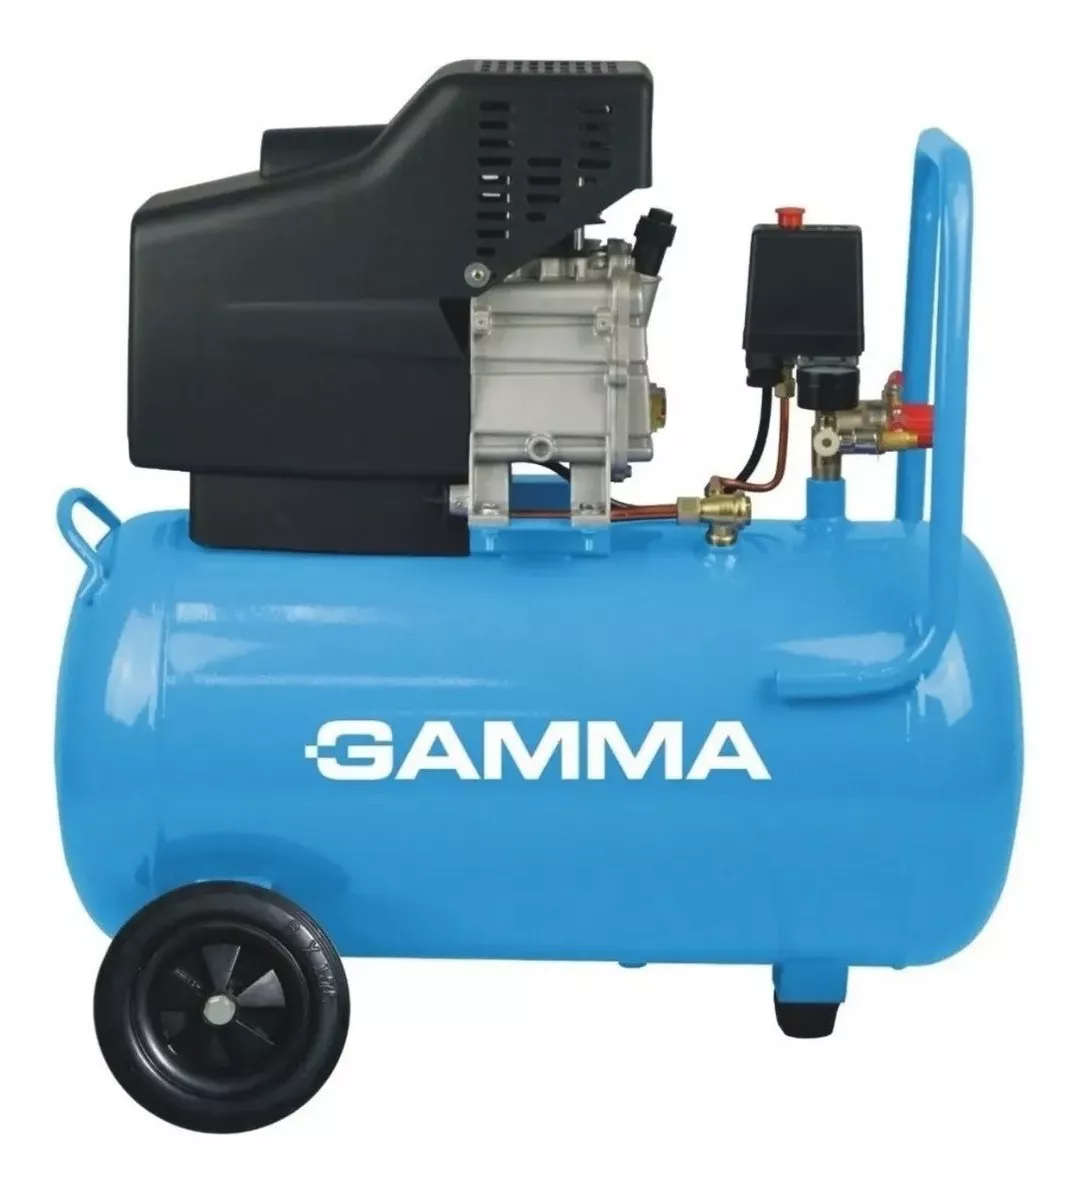 Compresor De Aire Eléctrico Portátil Gamma Máquinas G2850ar Monofásico Celeste 220v 50hz